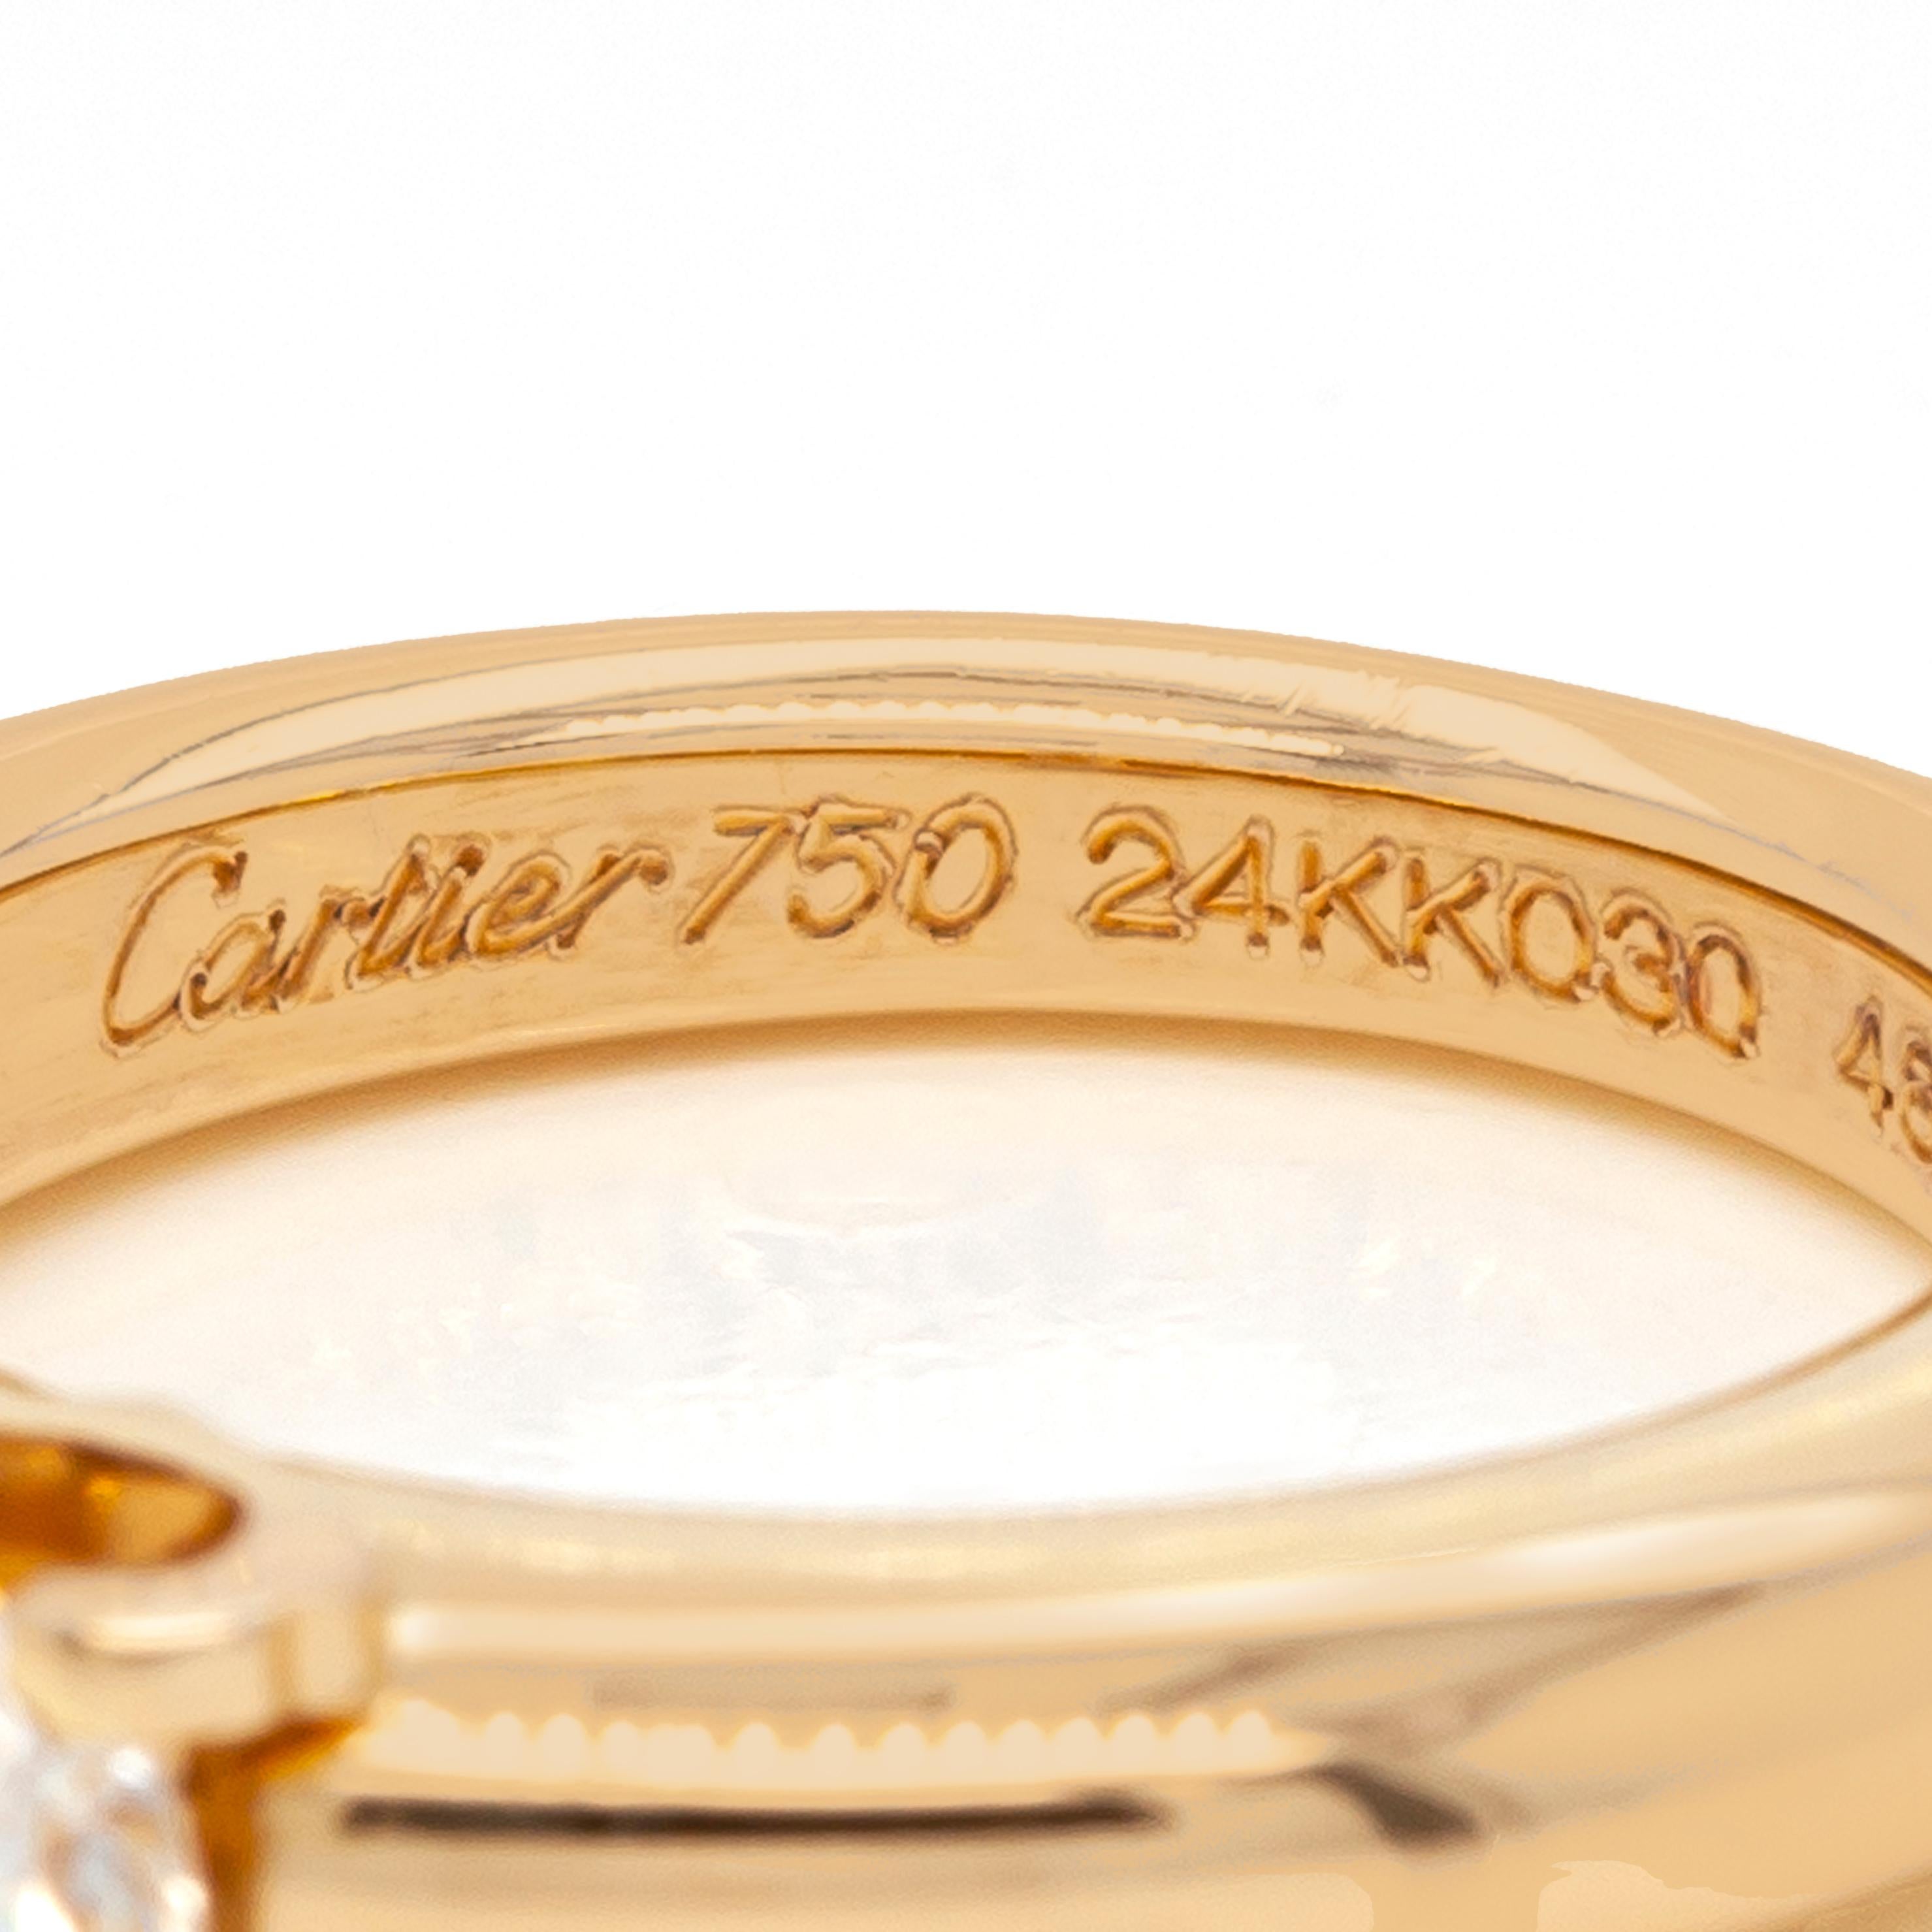 Brilliant Cut Cartier 'C de Cartier' 18 Carat Yellow Gold Diamond Solitaire Engagement Ring For Sale